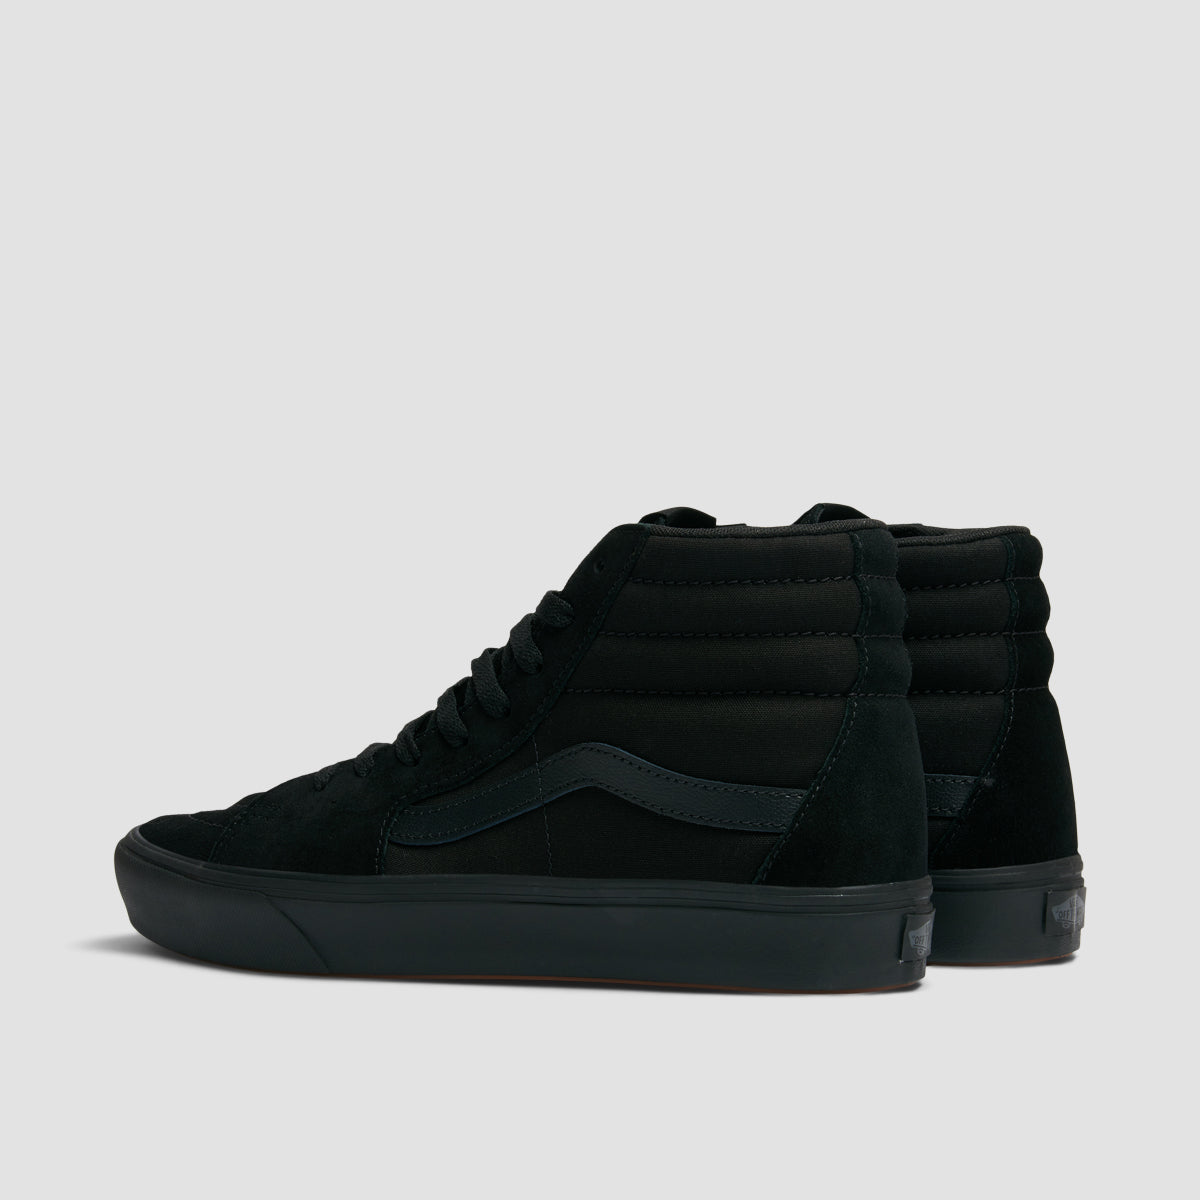 Vans ComfyCush SK8-Hi High Top Shoes - Classic Black/Black